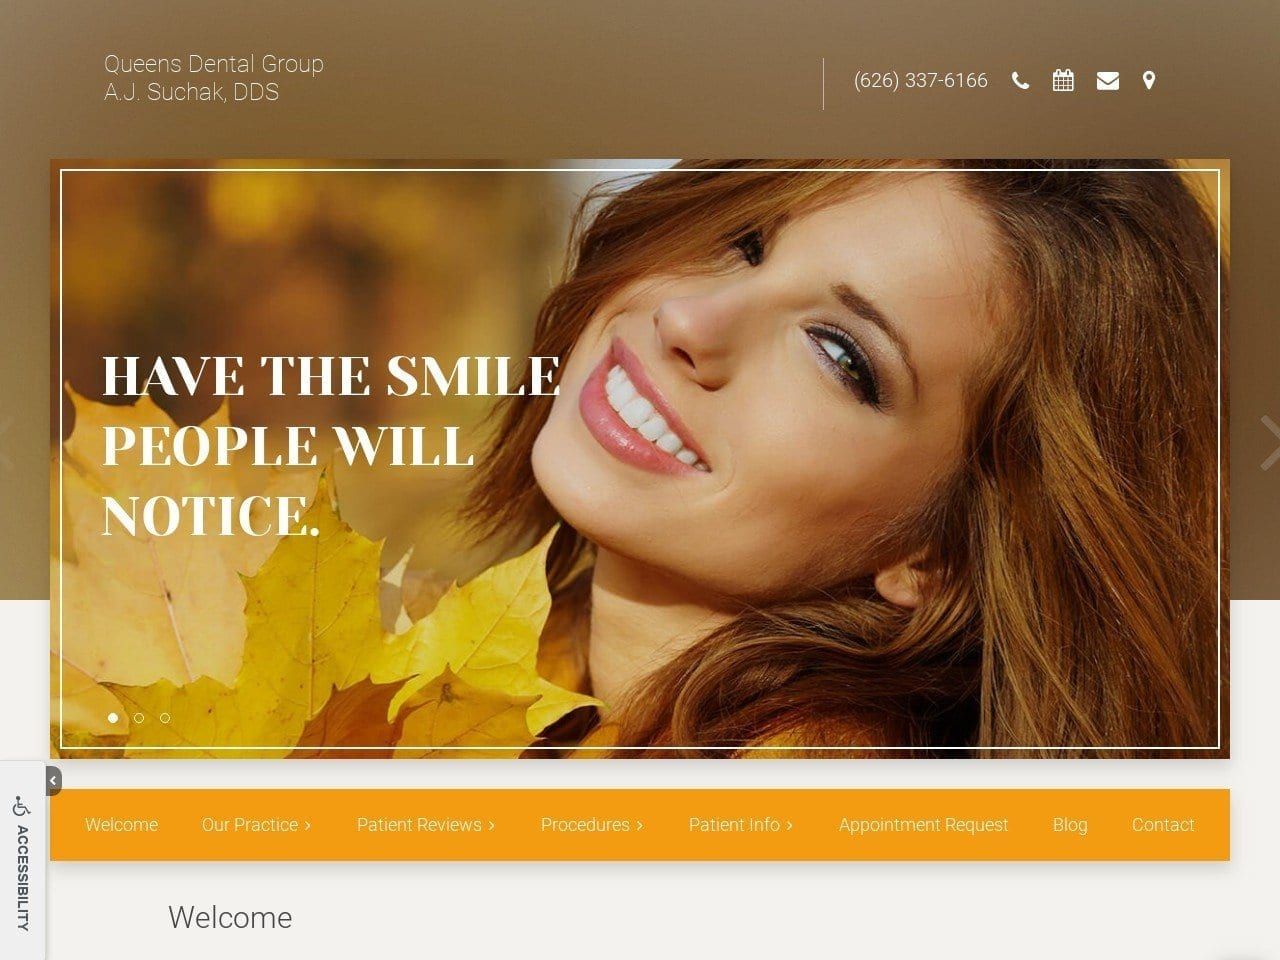 Queens Dental Group Website Screenshot from queens-dental.com